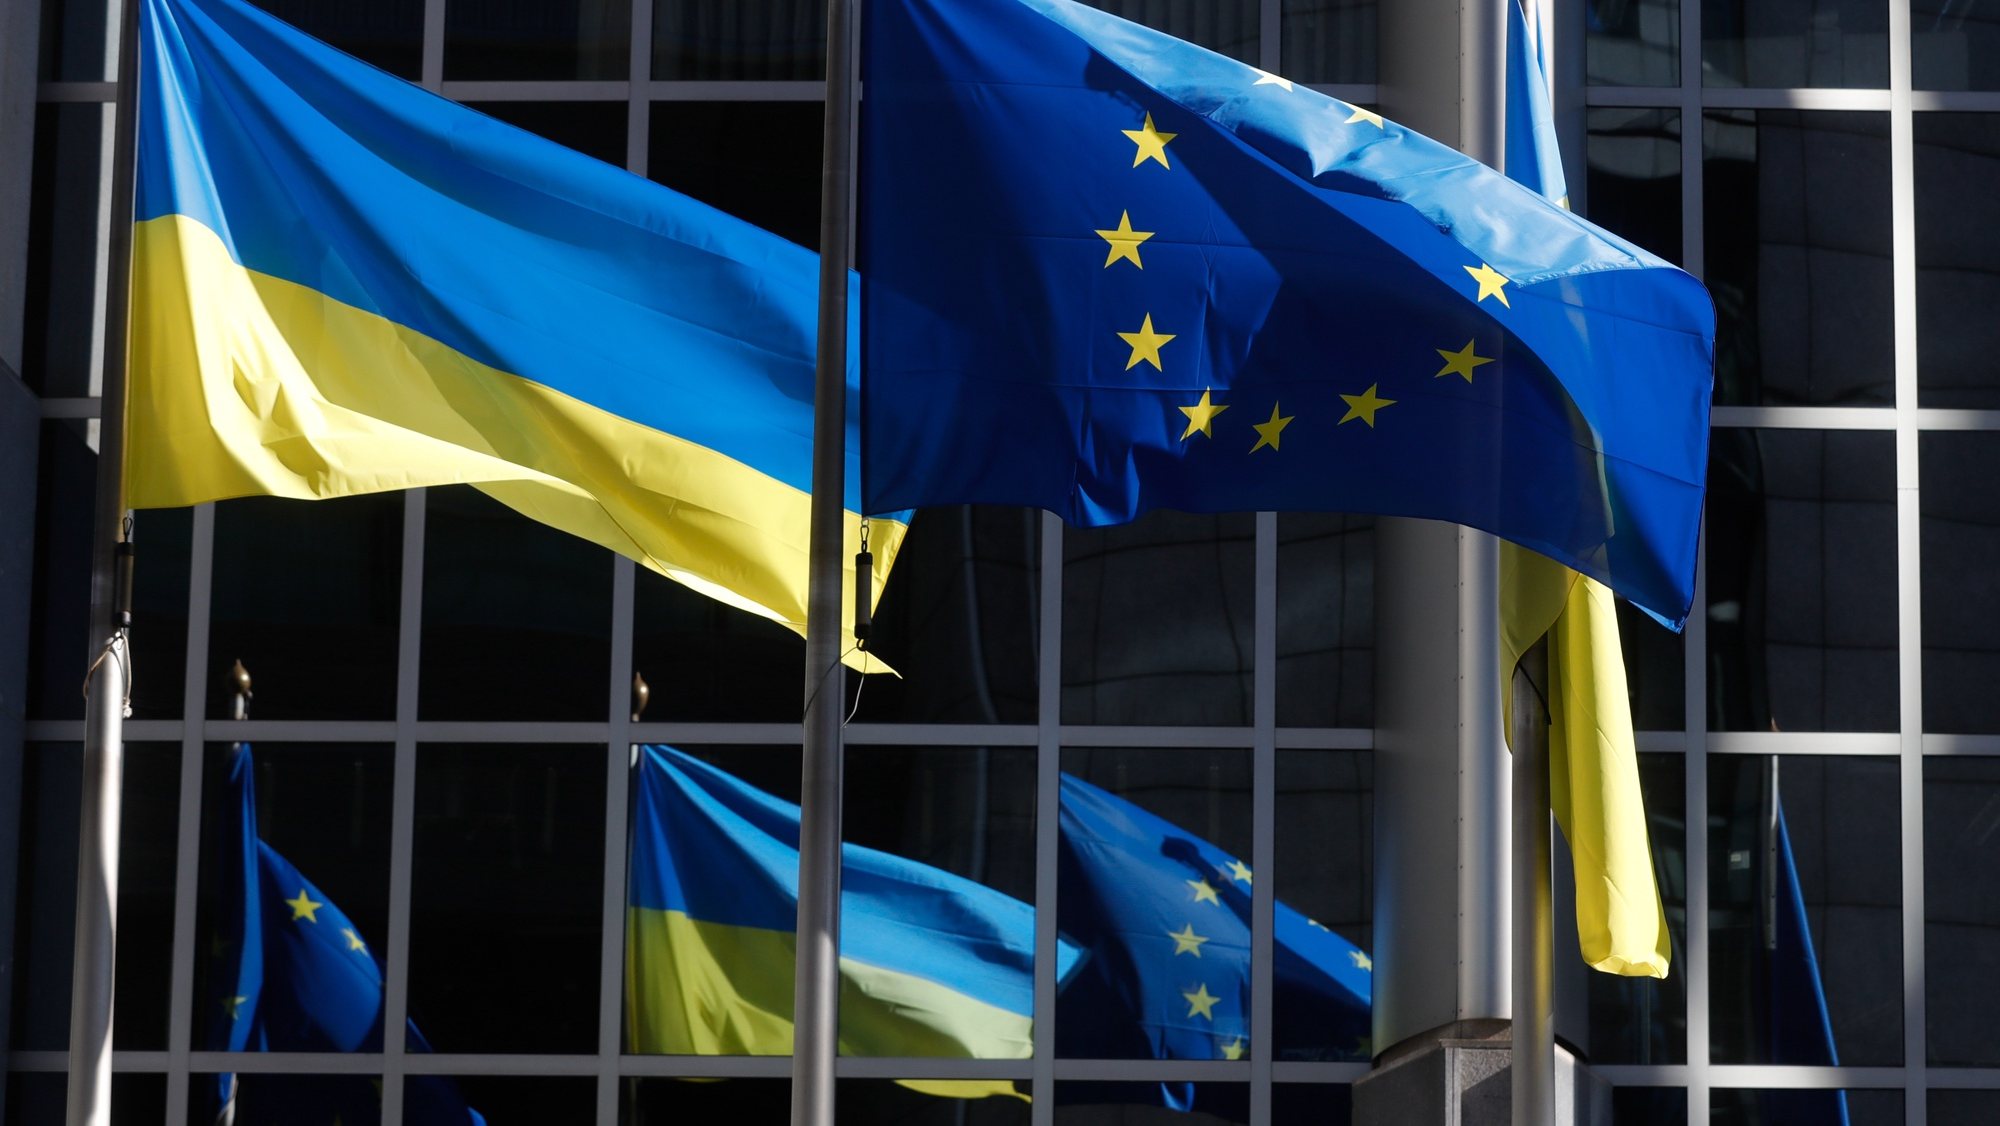 Bandeiras ucranianas em frente do Parlamento Europeu